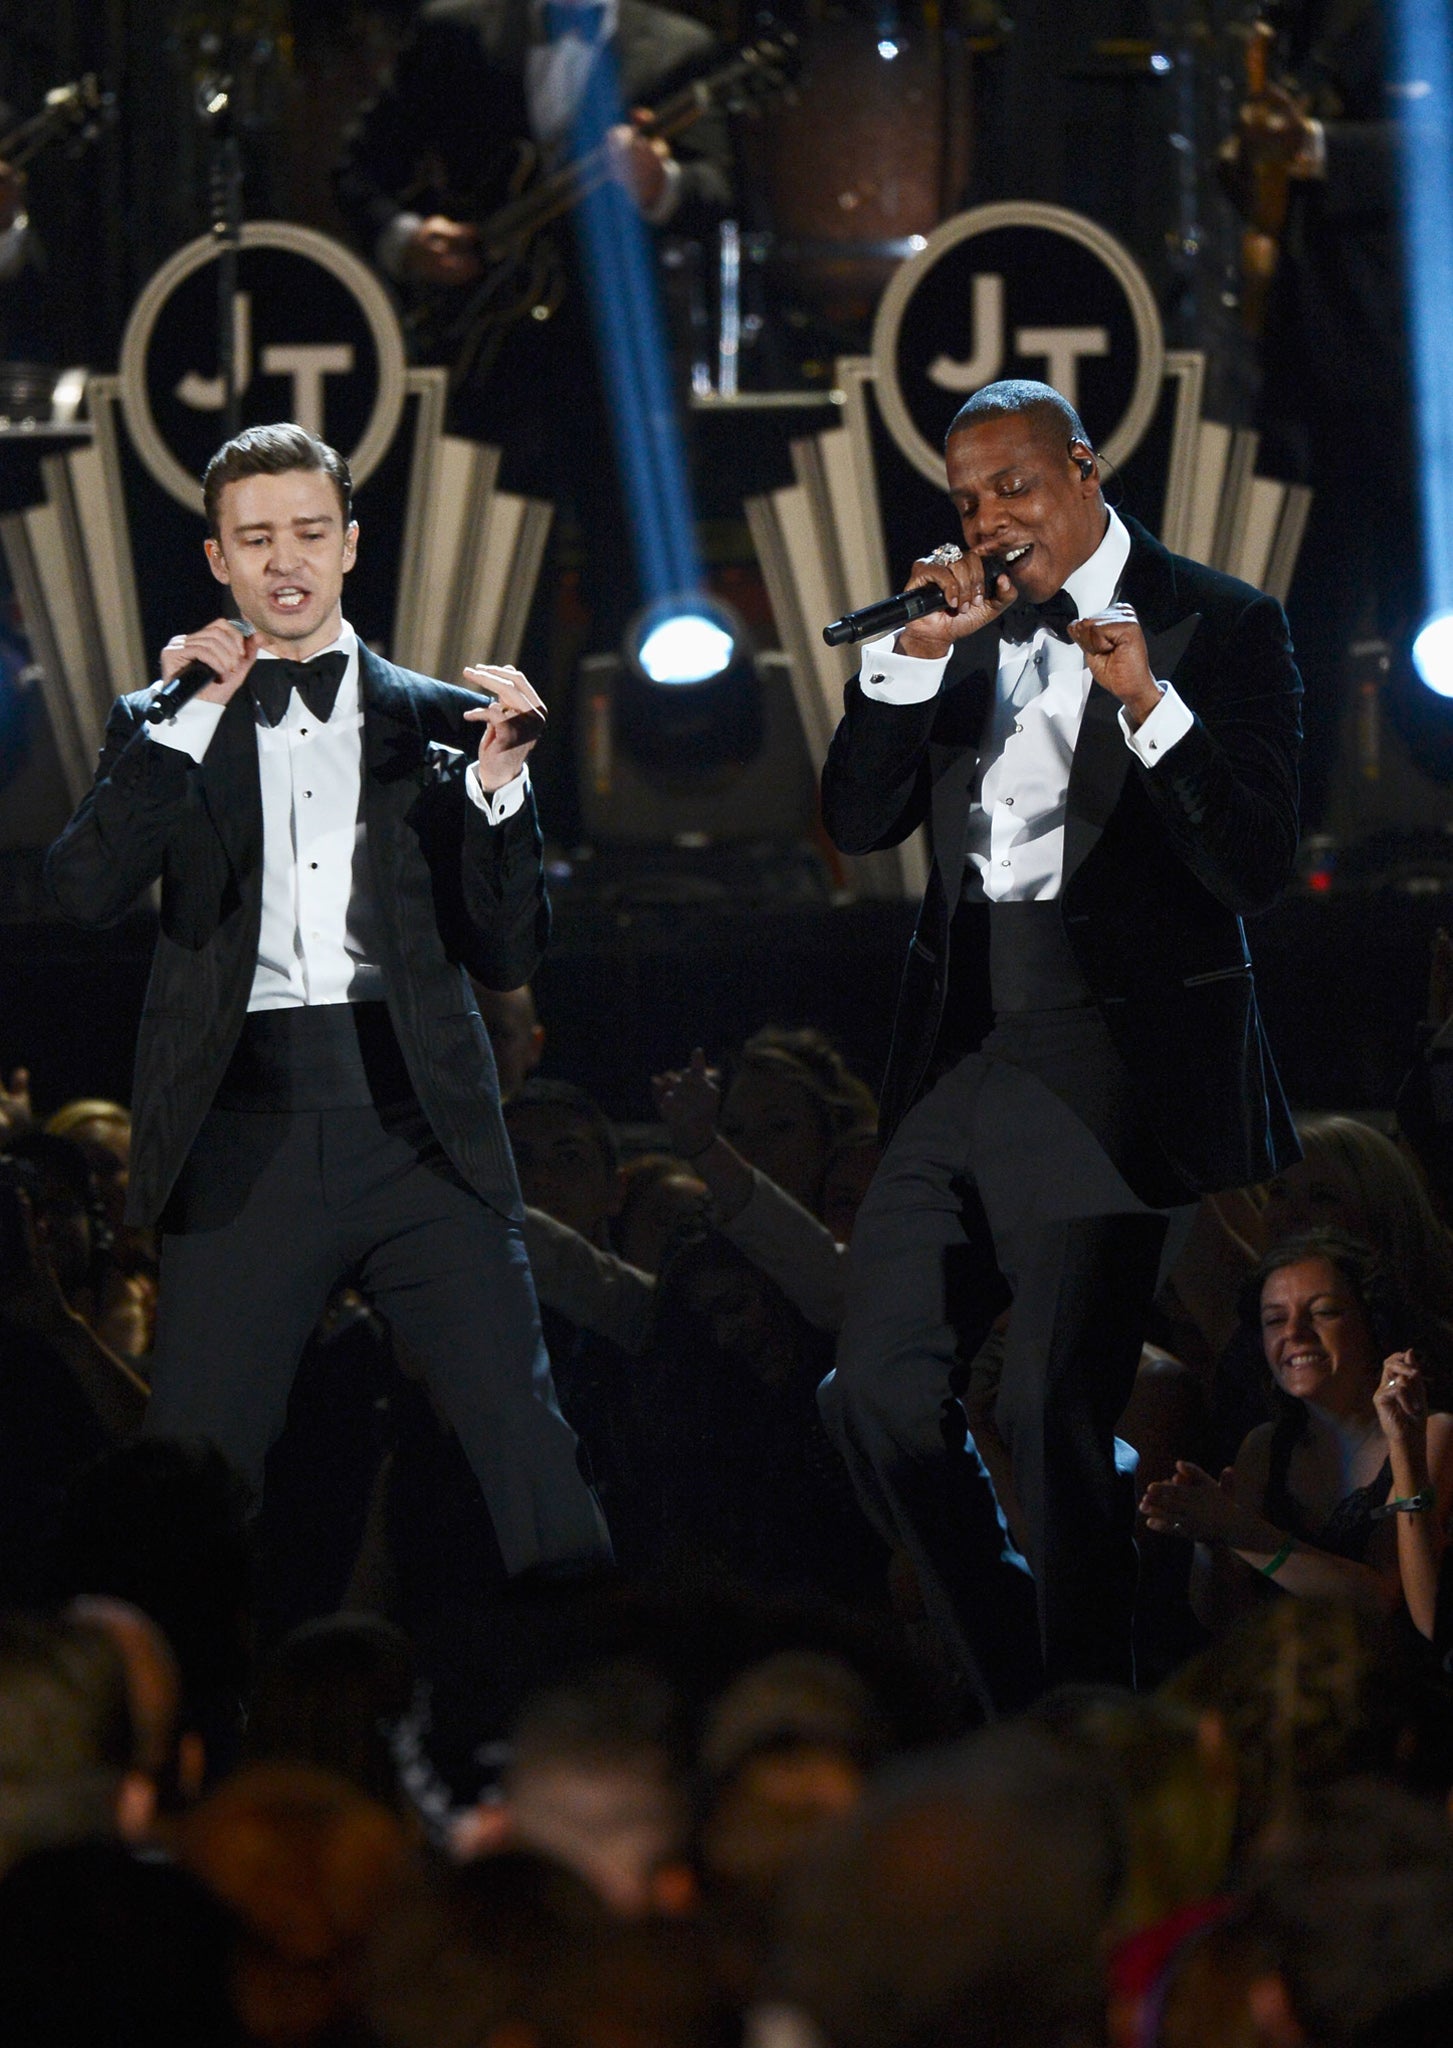 Bringing sexy back: Justin Timberlake and Jay-Z at the Grammys